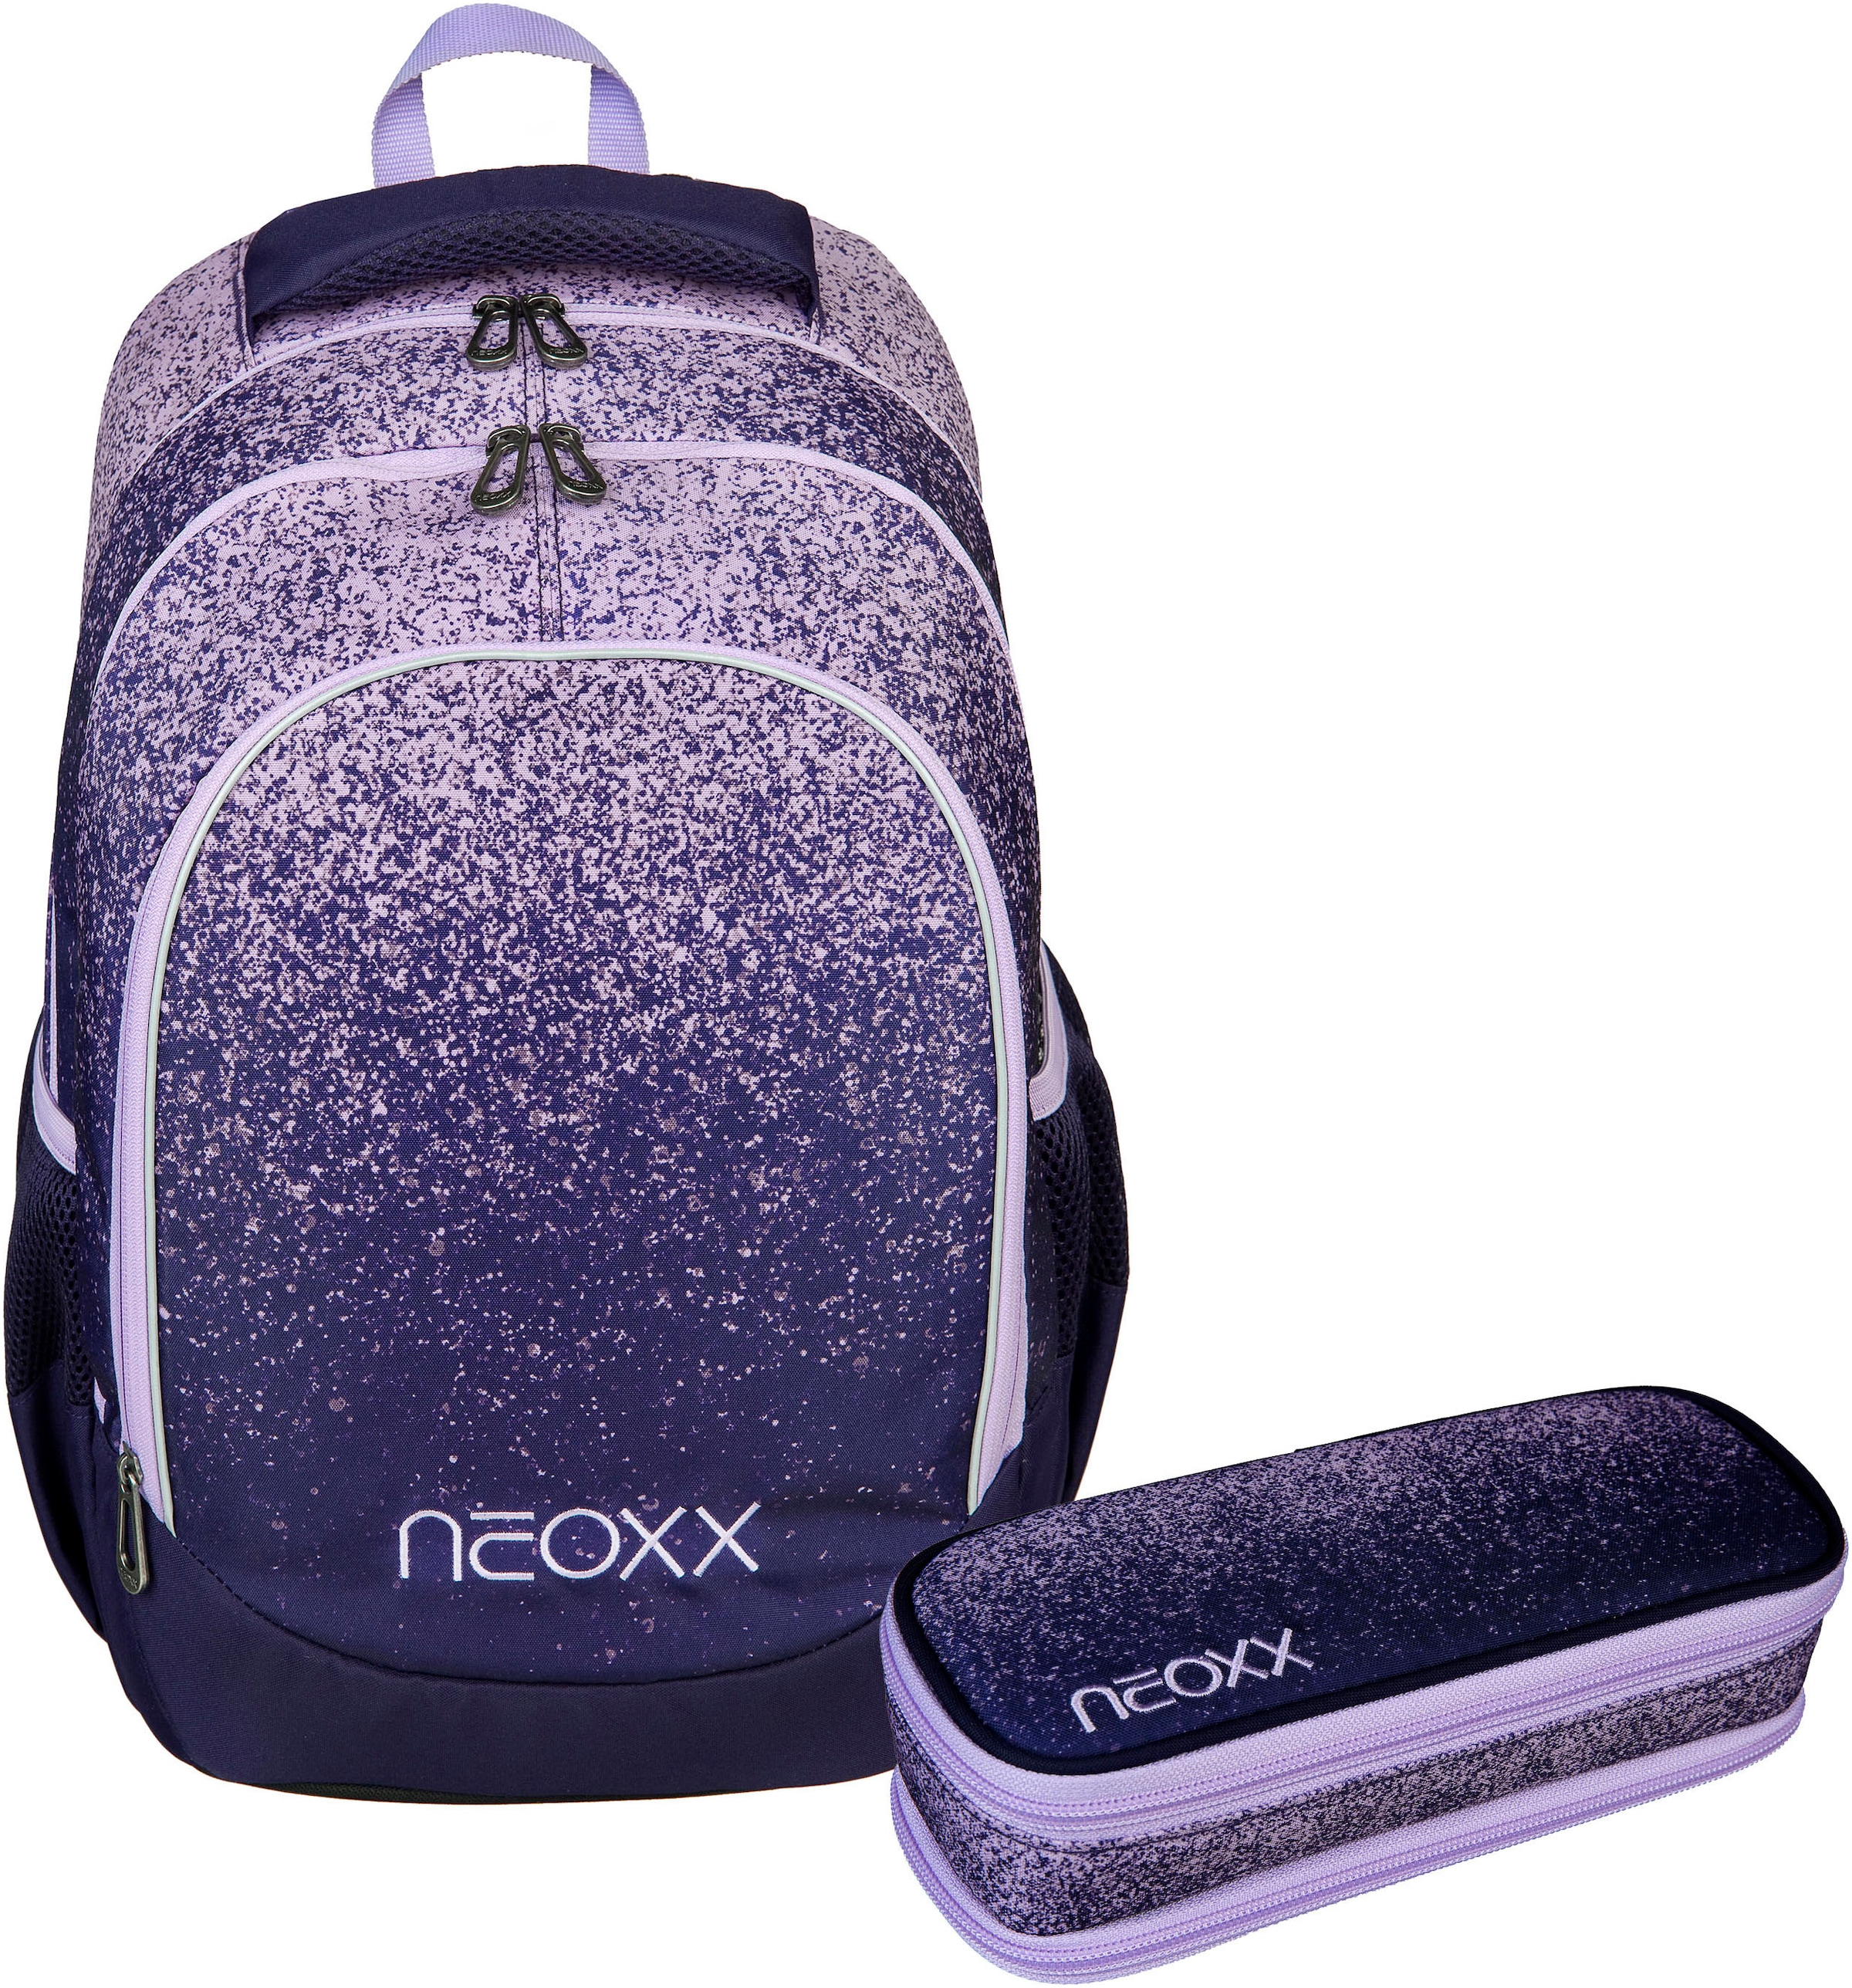 neoxx Schulrucksack »Fly Schulrucksack und Catch Schlamperbox, Glitterally perfect«, Reflektionsnaht, aus recycelten PET-Flaschen